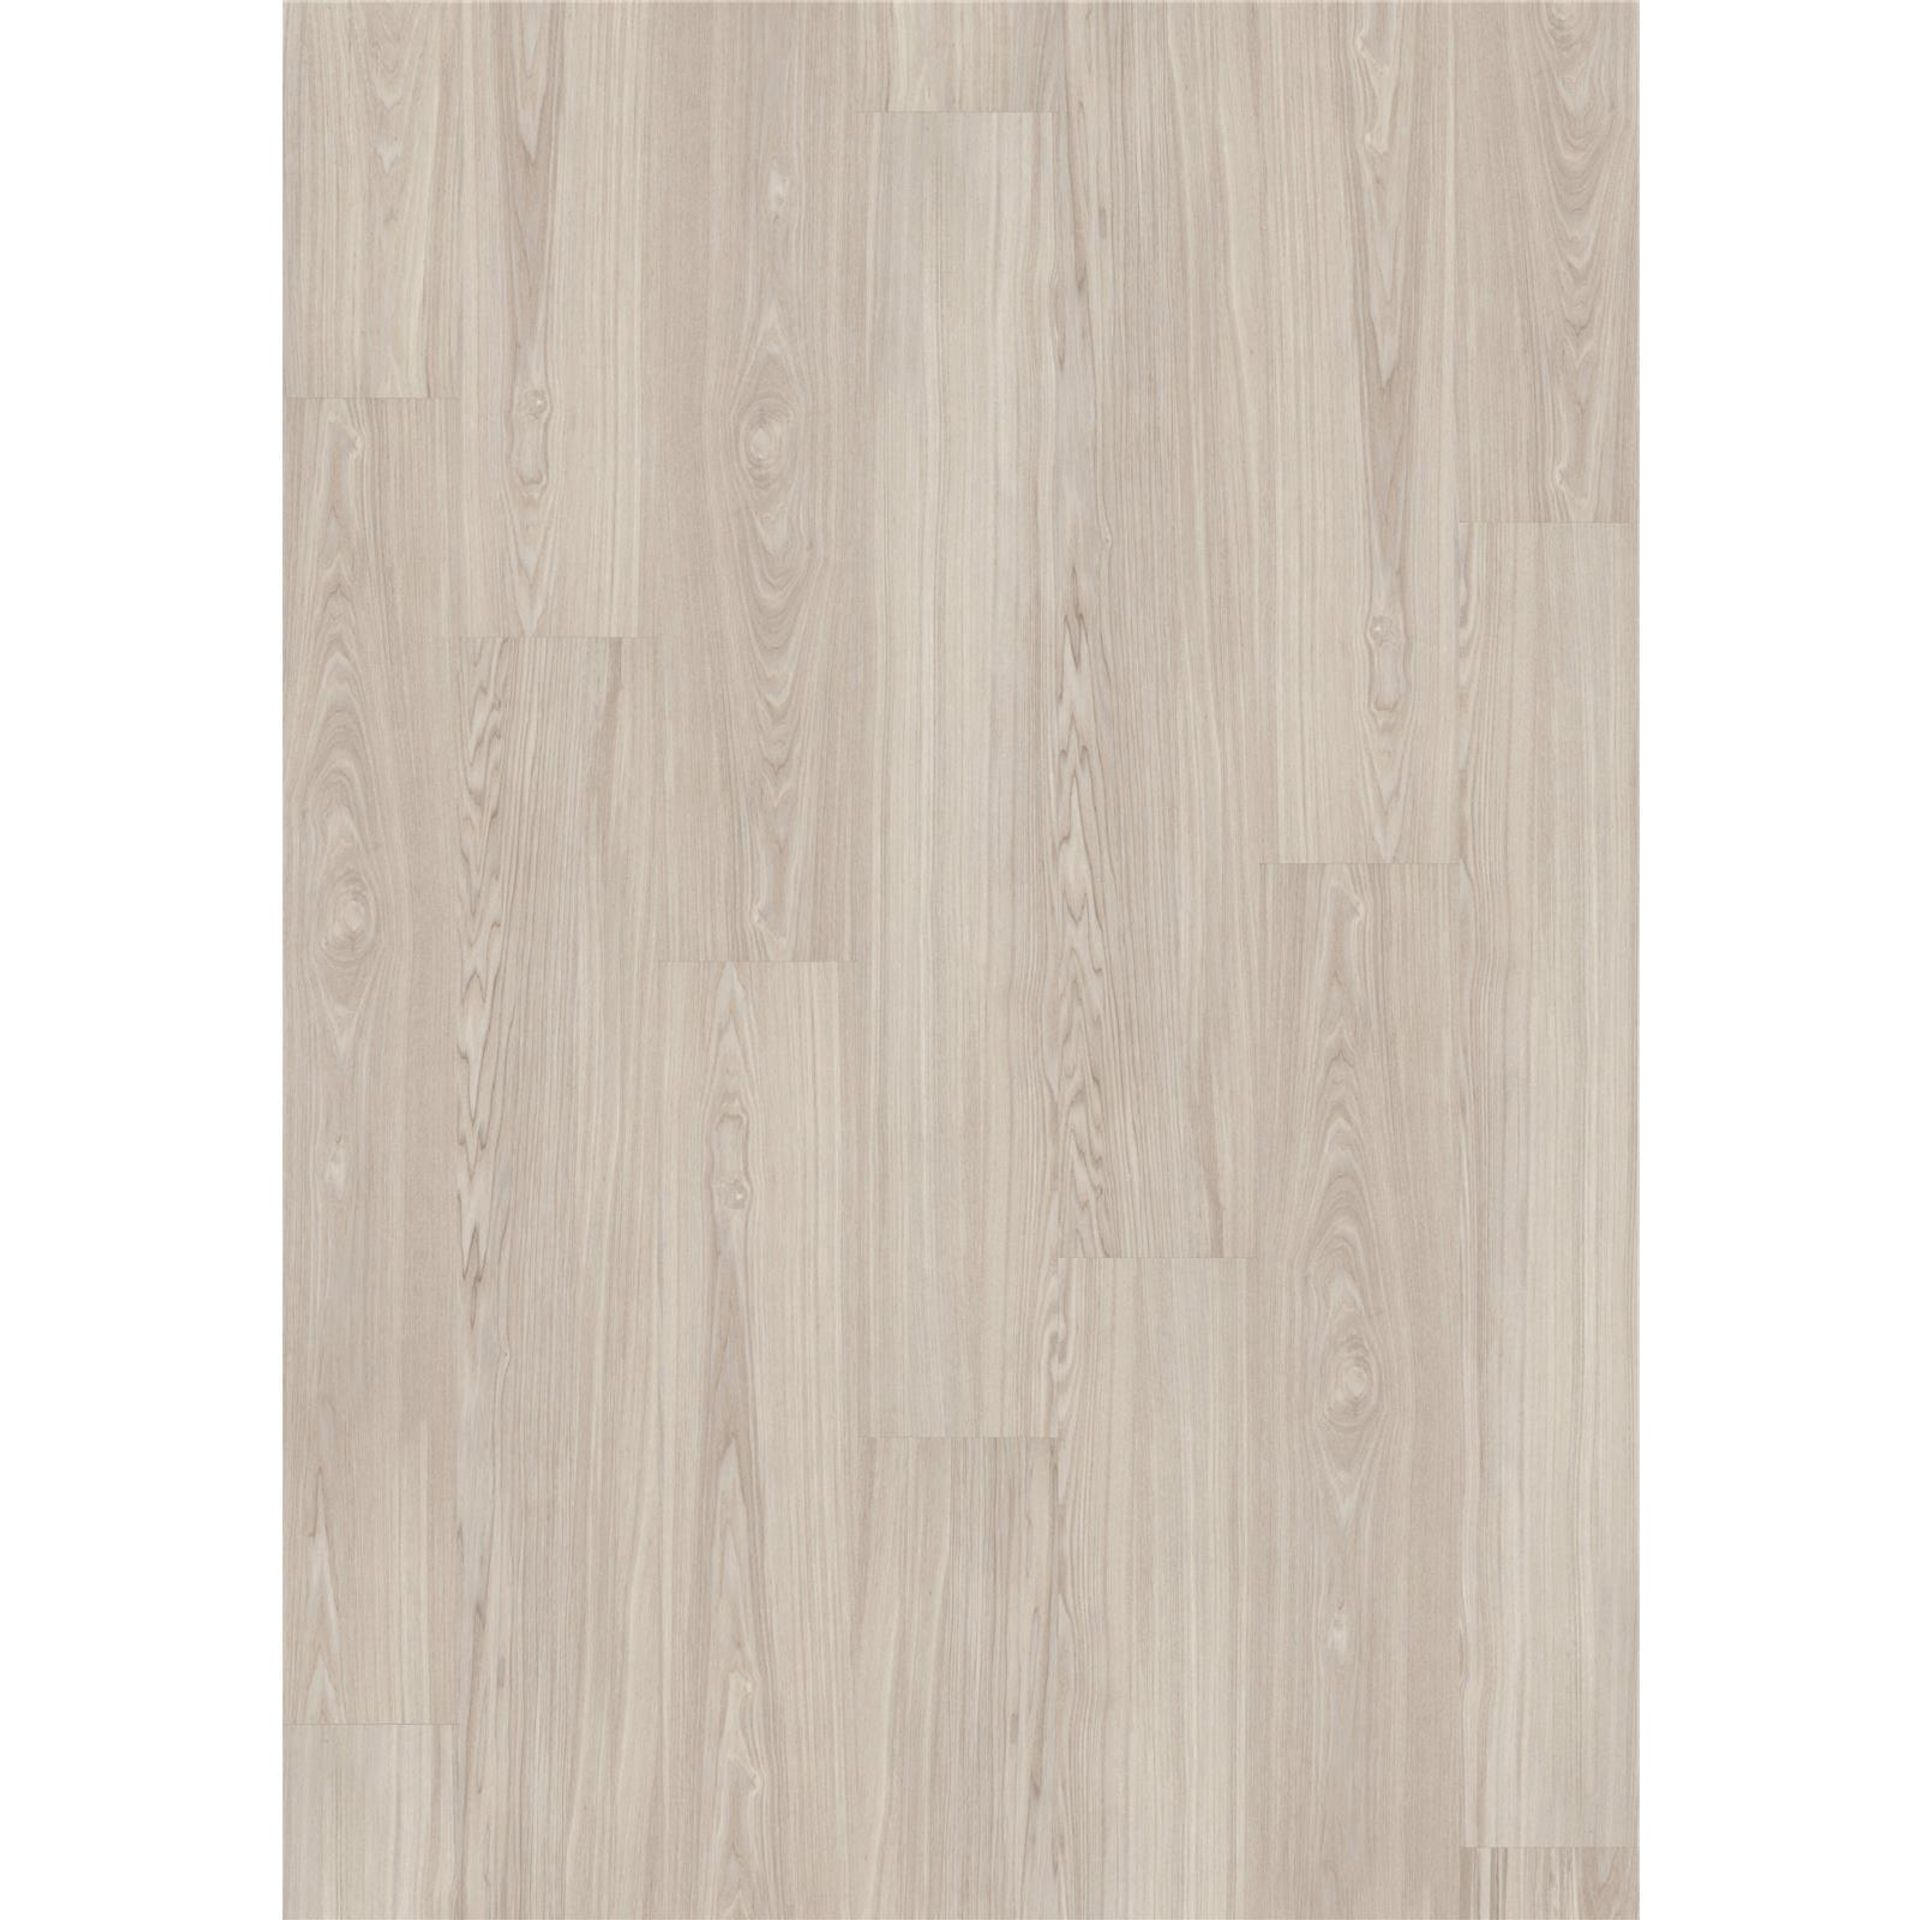 Designboden Click 853X Worn Ash - Planke 17,81 cm x 124,46 cm - Nutzschichtdicke 0,4 mm